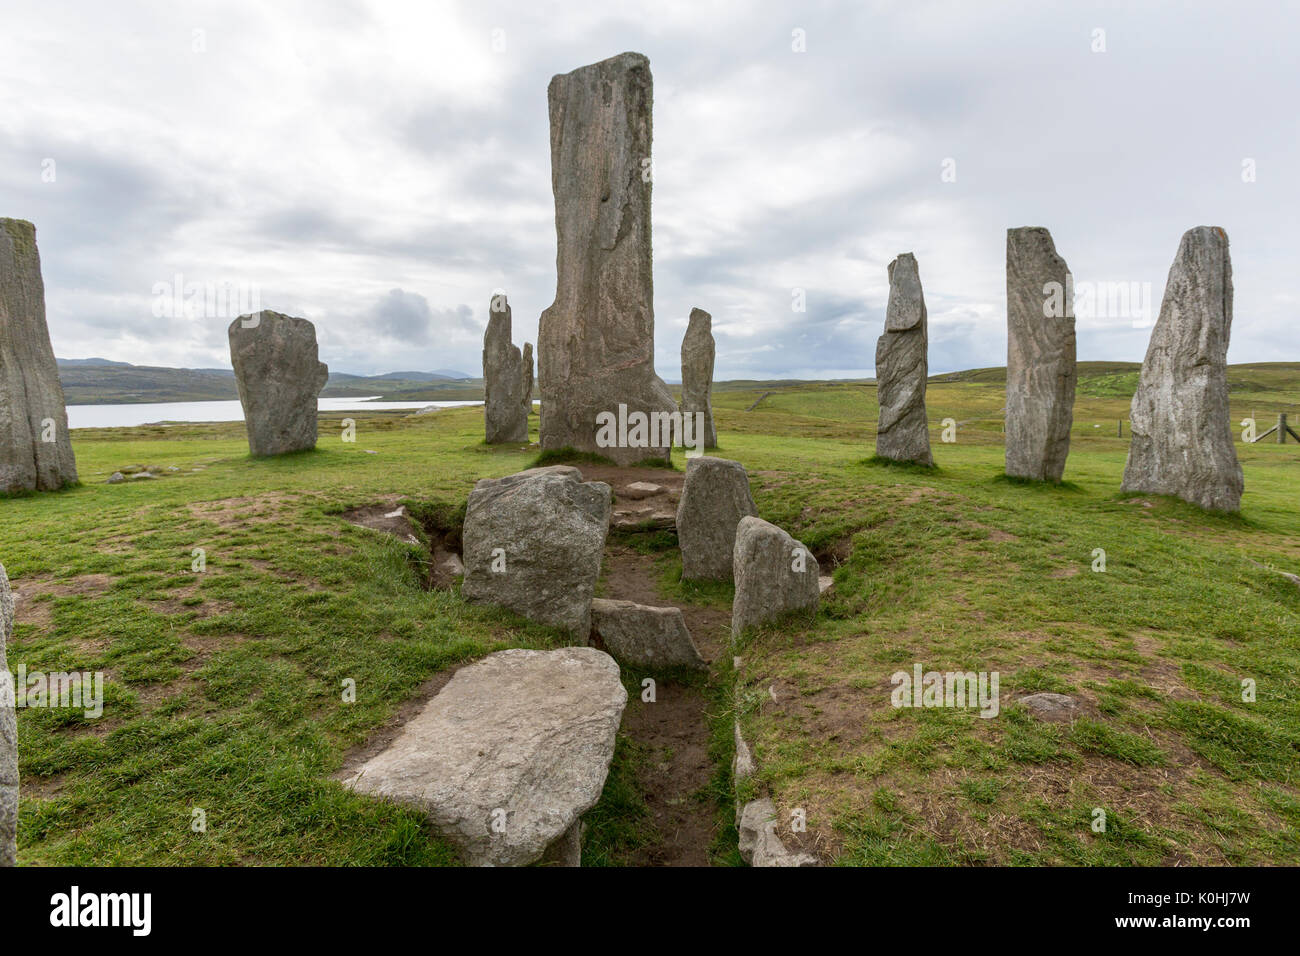 Chambré tombe, Callanish Standing Stones, pierres placées dans un motif cruciforme avec un cercle central en pierre, Callanish, Ecosse, Royaume-Uni Banque D'Images